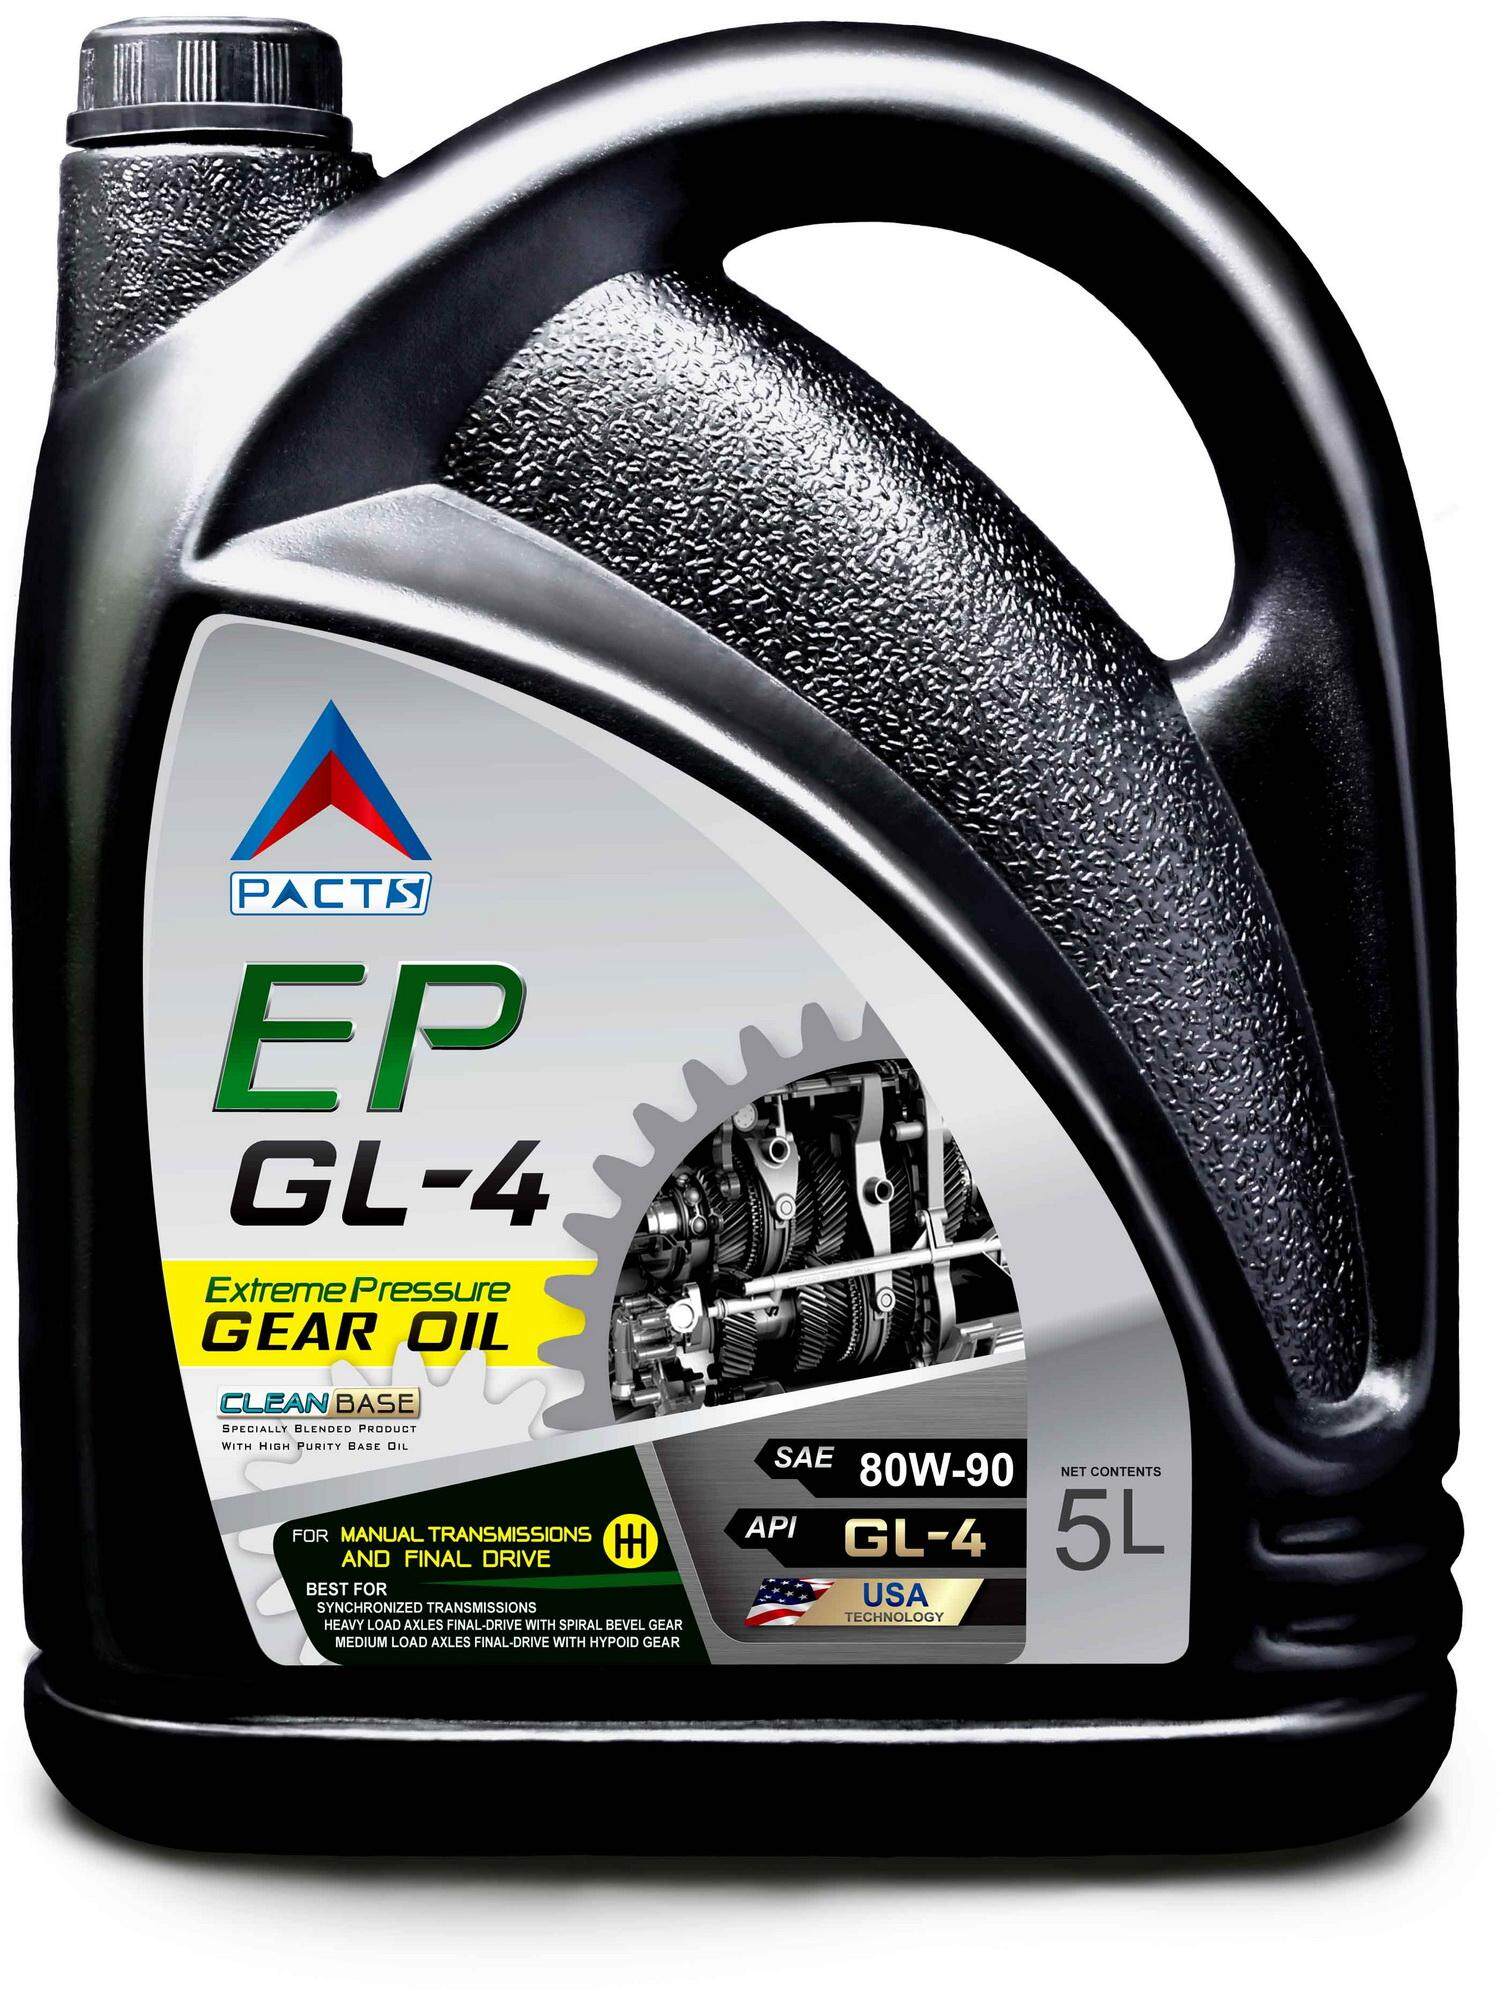 PACTS น้ำมันเกียร์ EP GL-4 SAE 80W-90 5 ลิตร